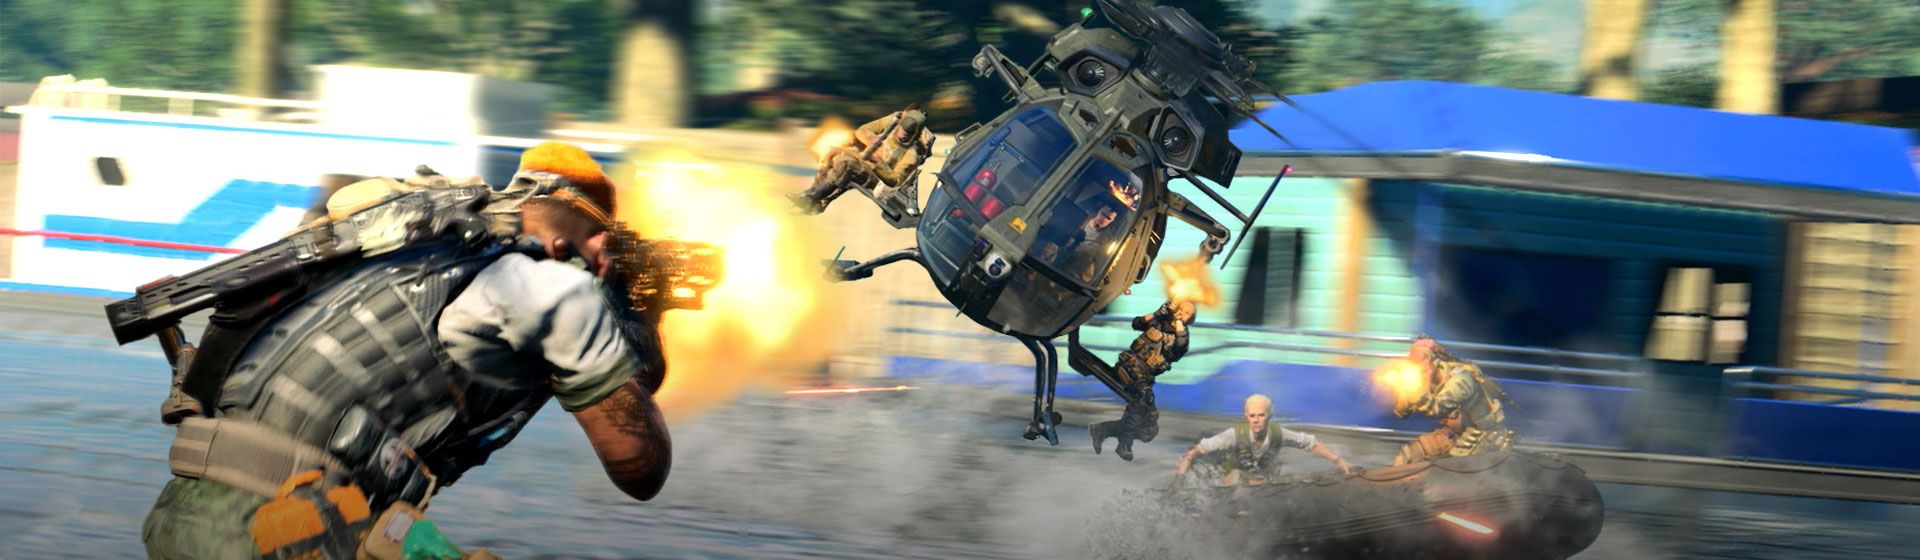 Jogos grátis da PS Plus em julho de 2021: Call of Duty e mais